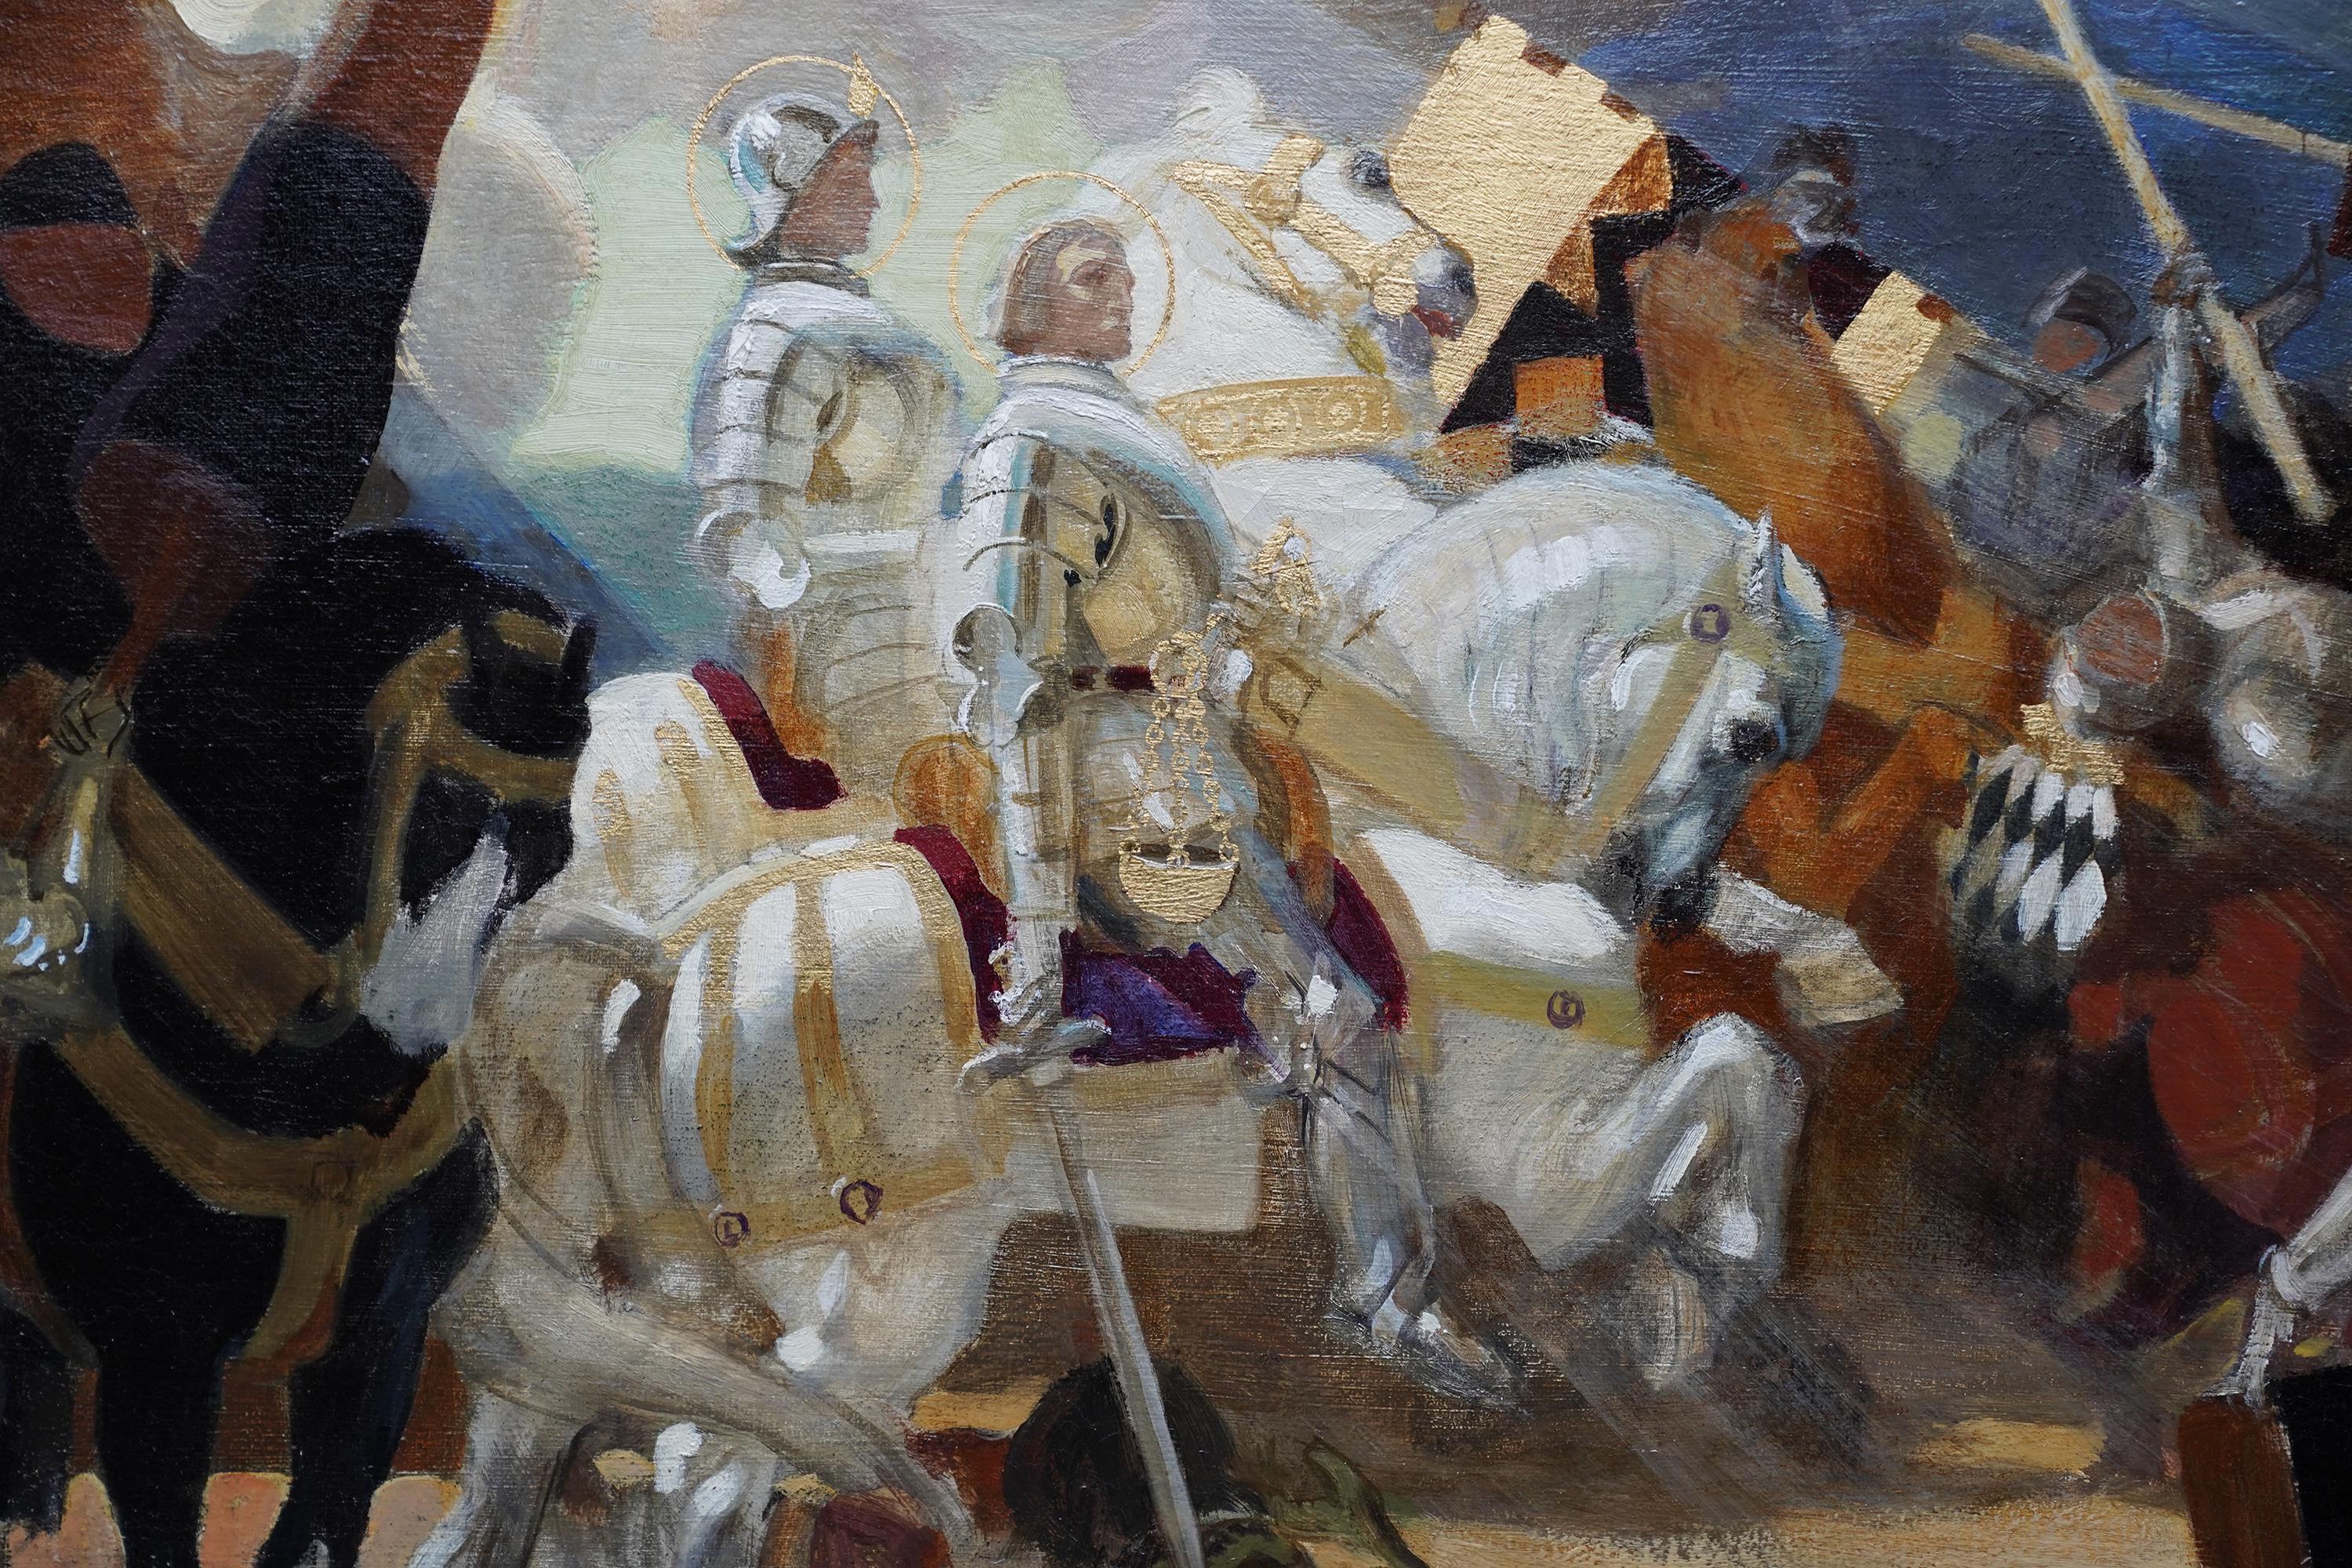 Cette remarquable peinture à l'huile religieuse britannique de l'époque édouardienne est l'œuvre du célèbre artiste Francis 